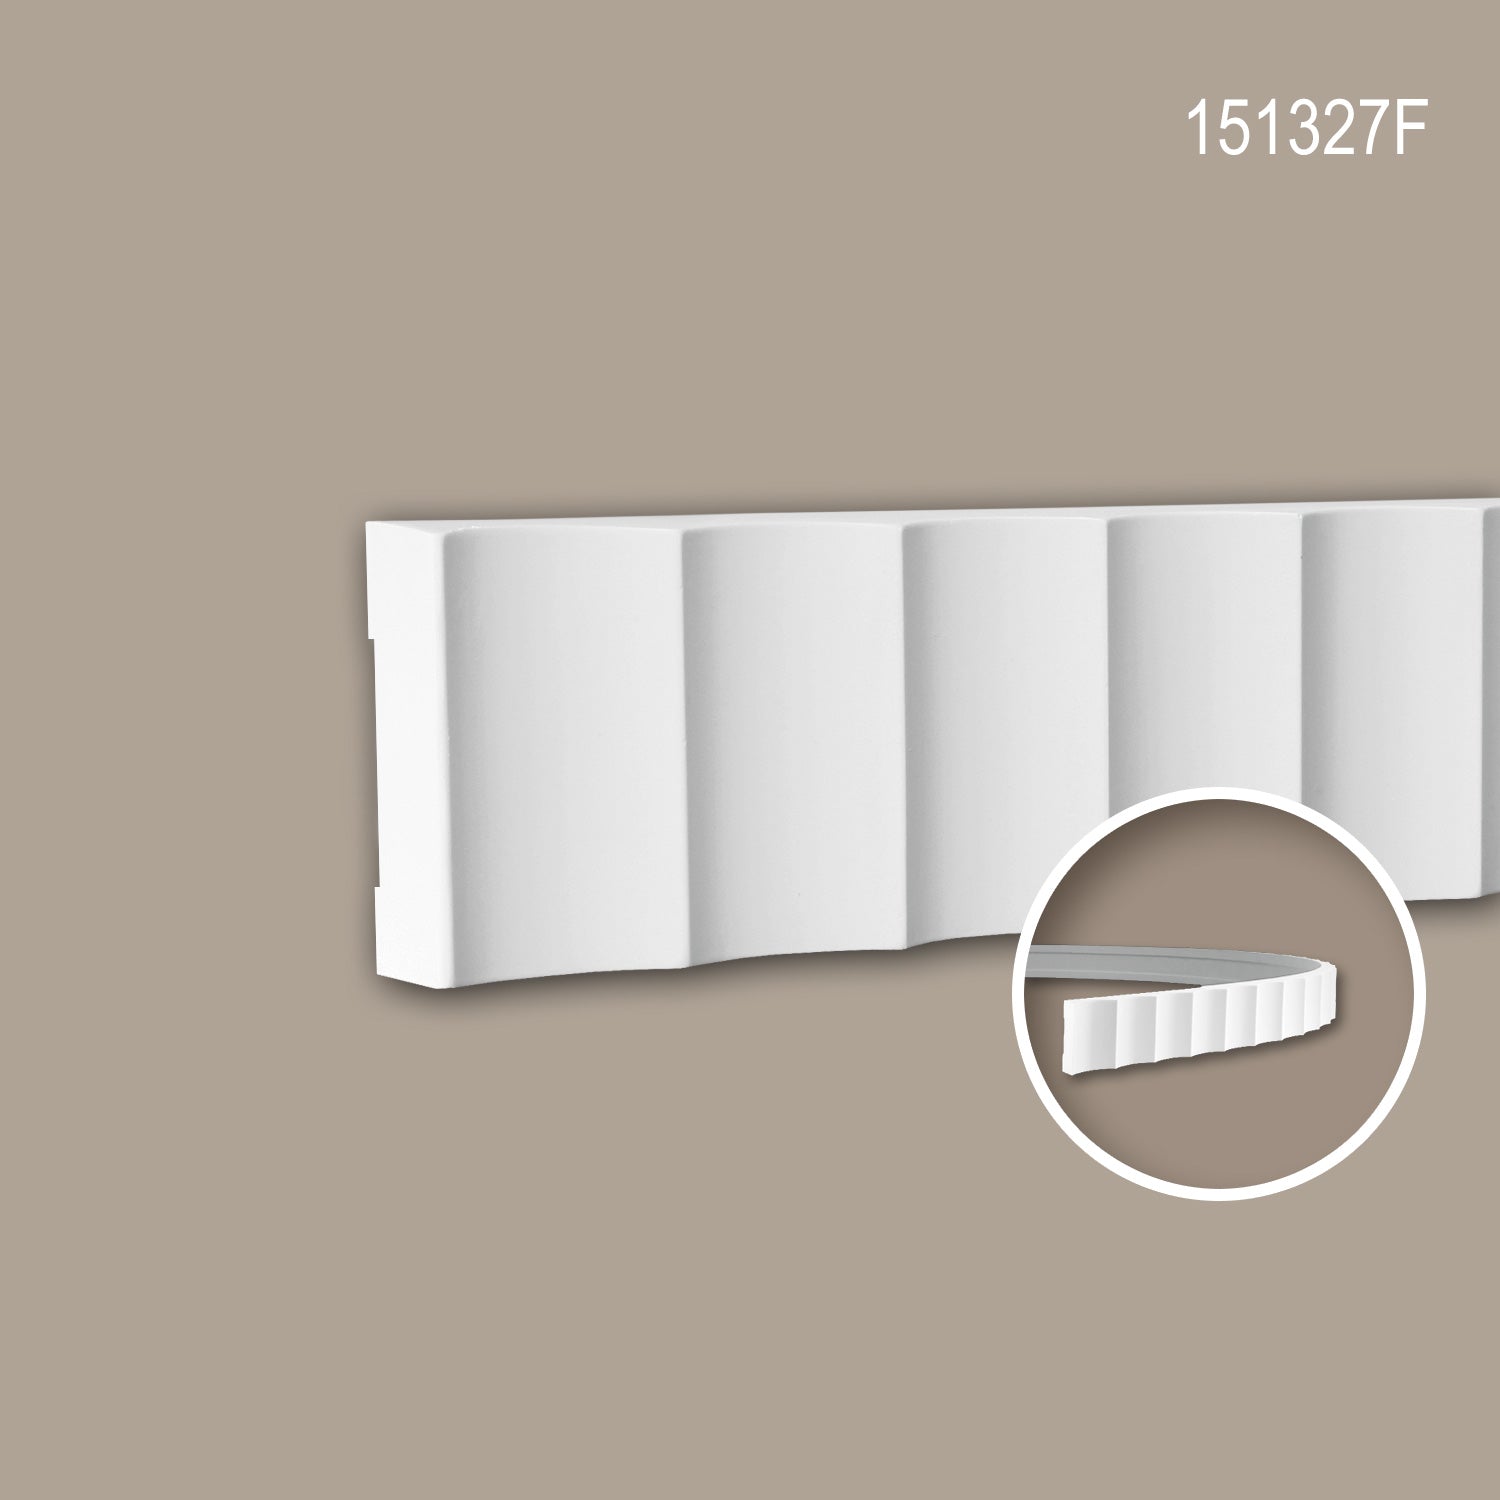 Cimaise 151327F Profhome Moulure décorative flexible design moderne blanc 2 m-1